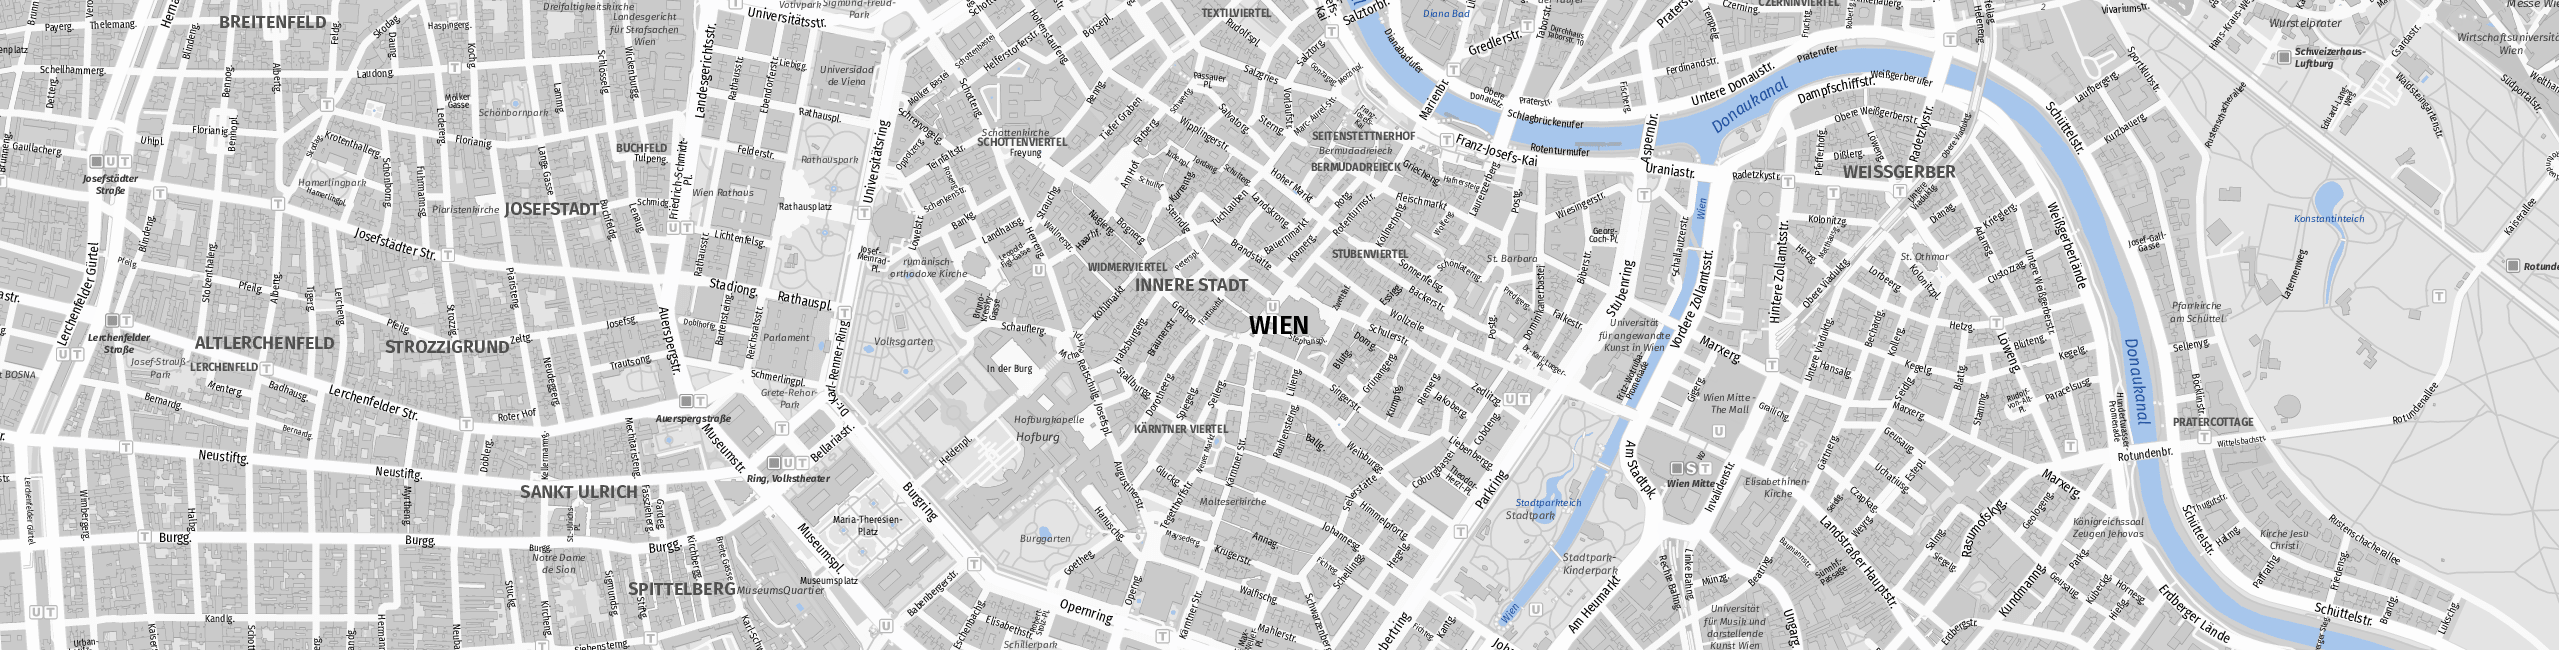 Stadtplan Vienna zum Downloaden.